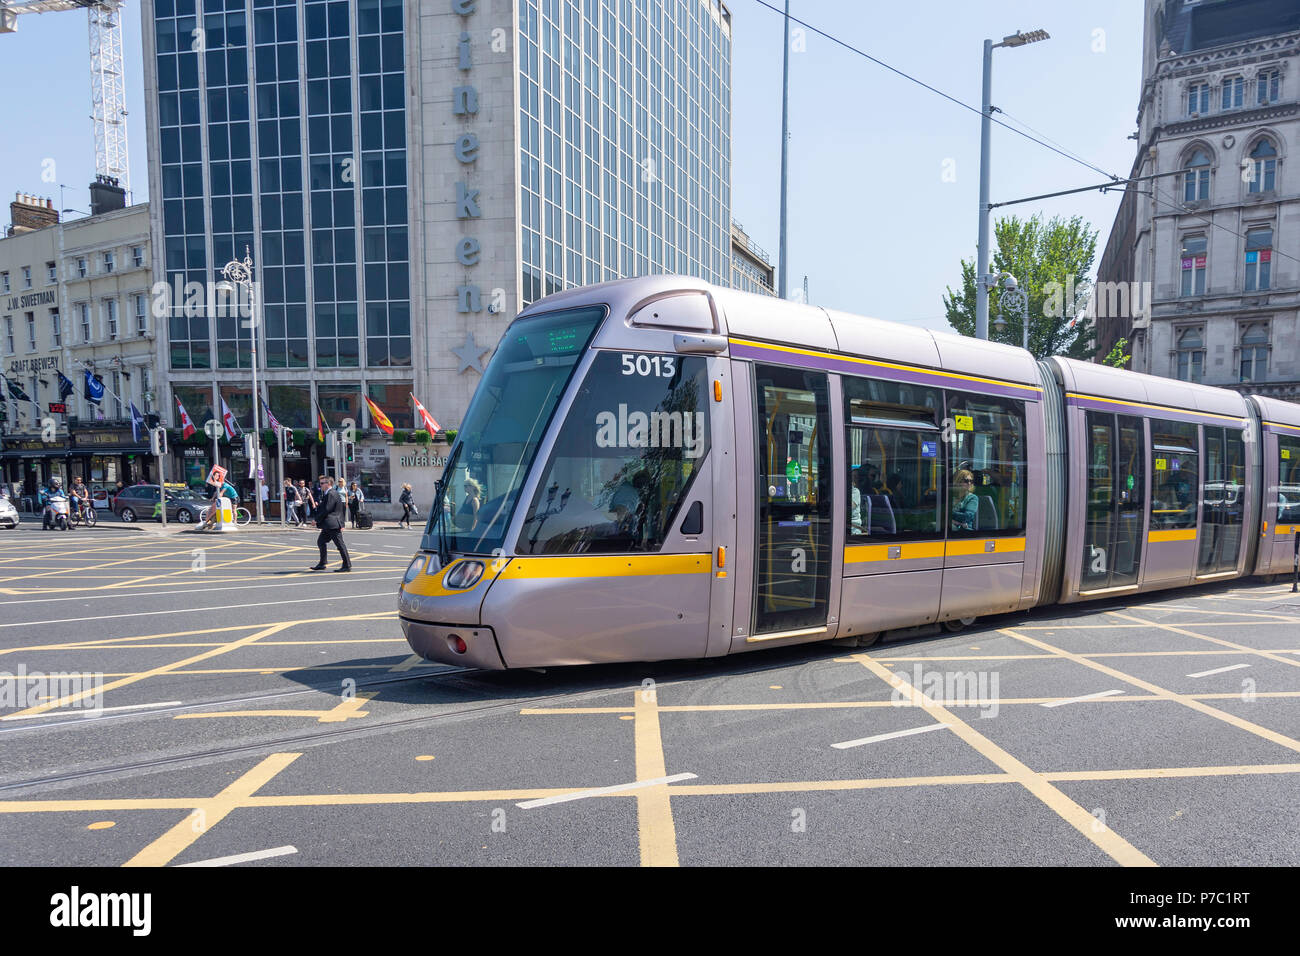 Système de tramway/train léger Luas, O'Connell Street Lower, Dublin, République d'Irlande Banque D'Images